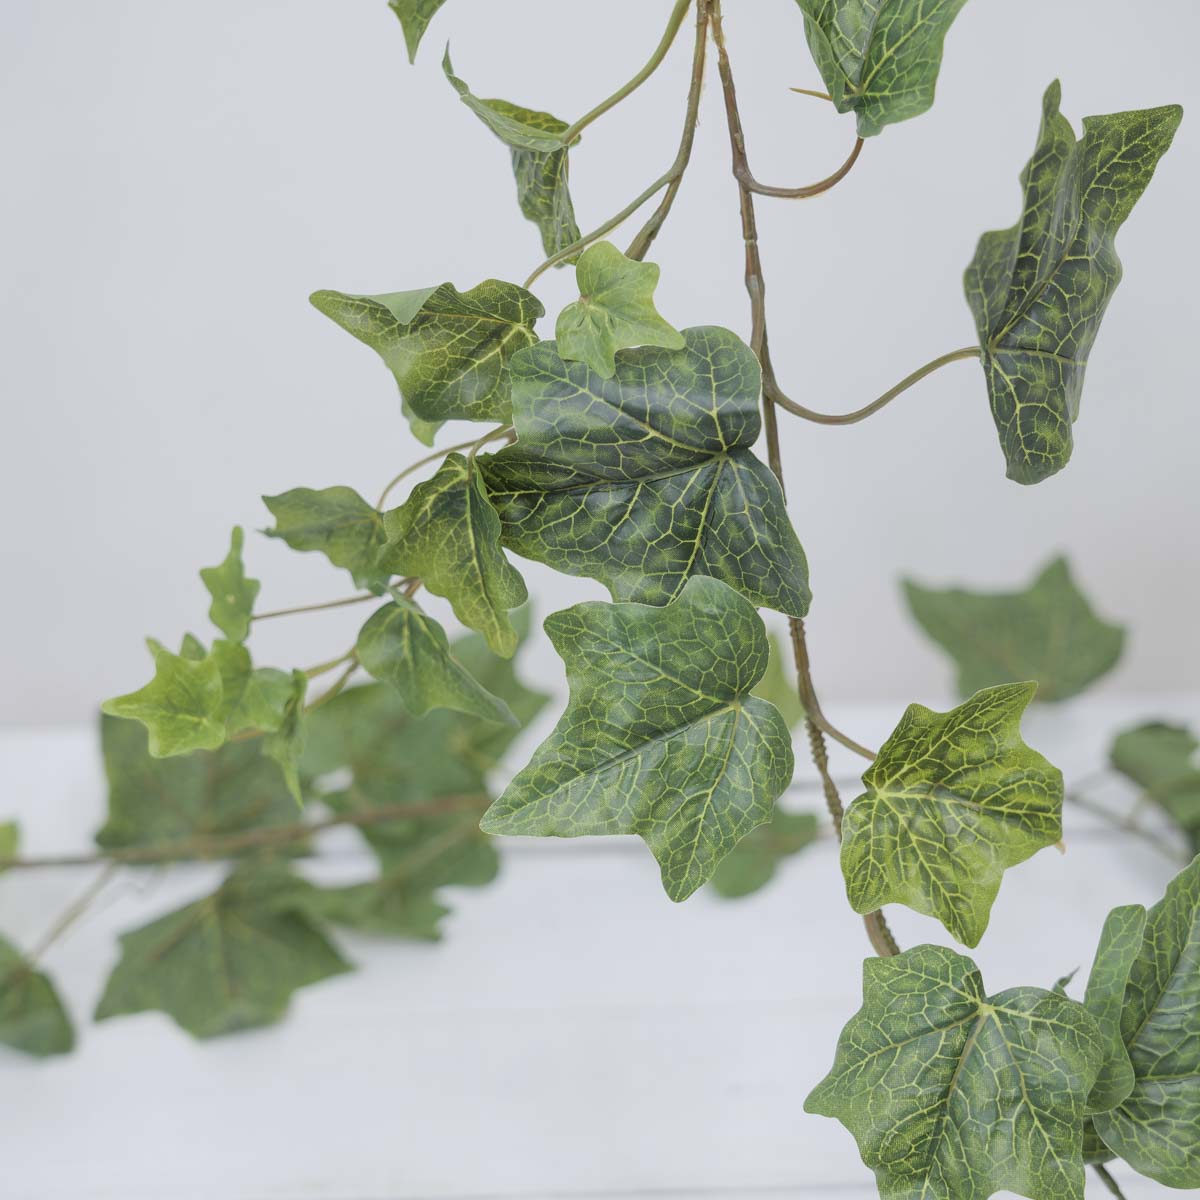 조화넝쿨 네추럴 잎사귀 갈란드 184cm 시즌2 아이비잎 잎사귀디테일